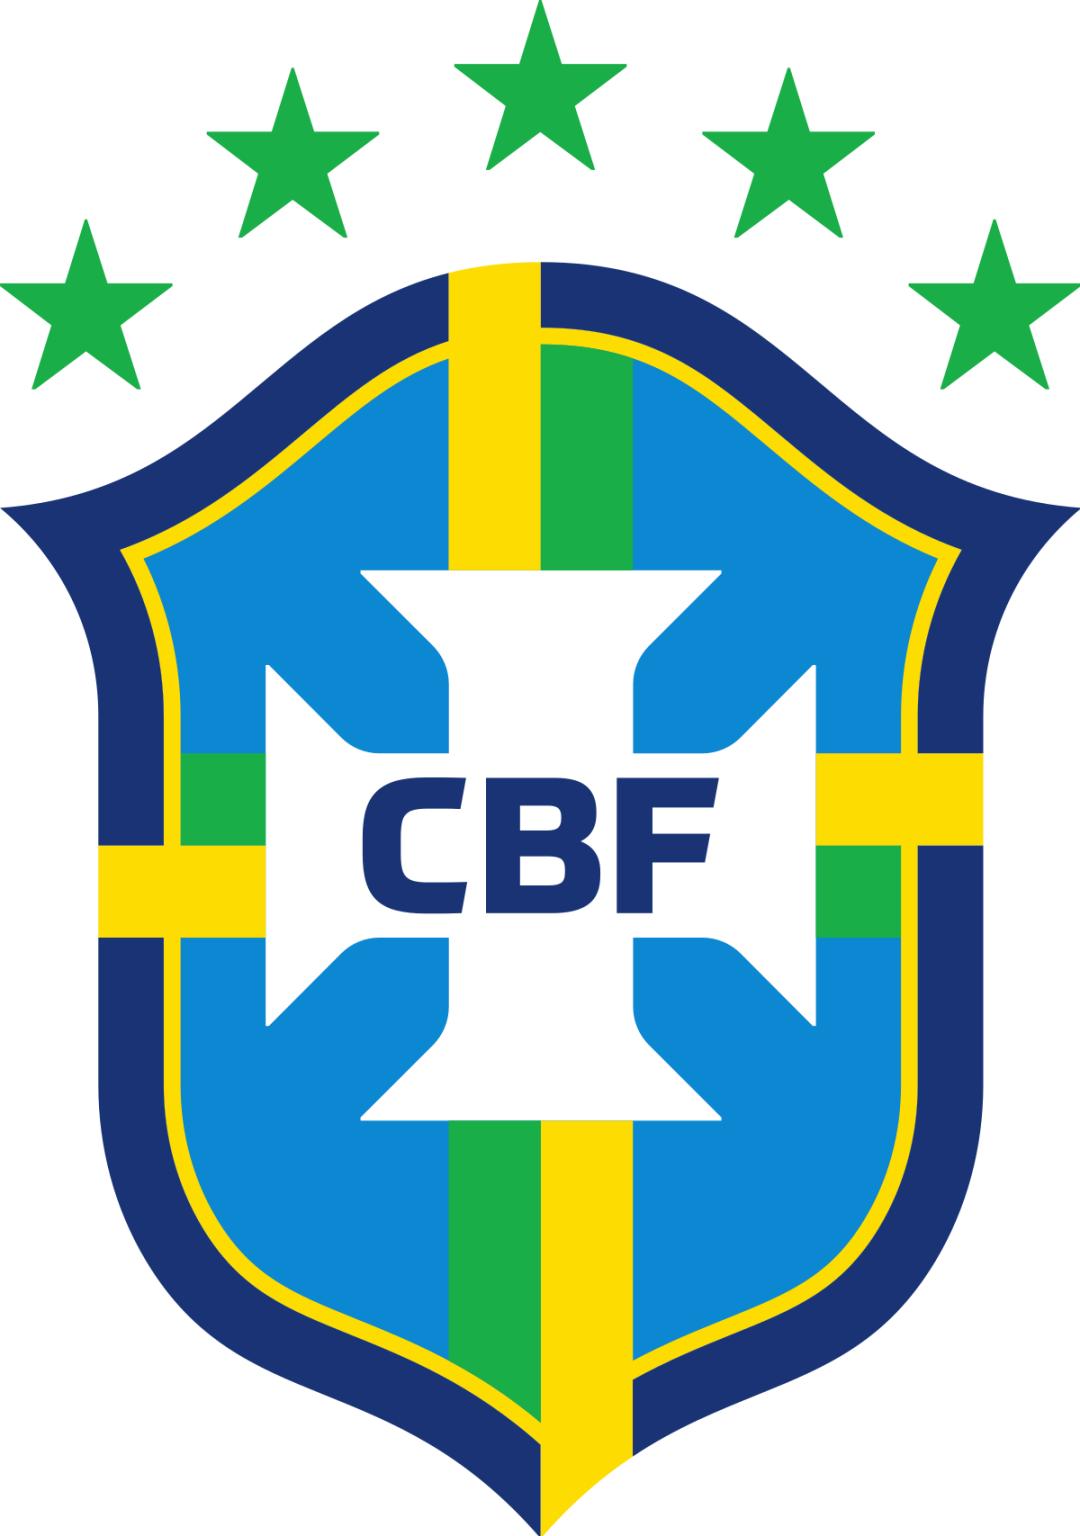 一张图带你看懂世界杯巴西队｜最新logo｜最新球服设计｜